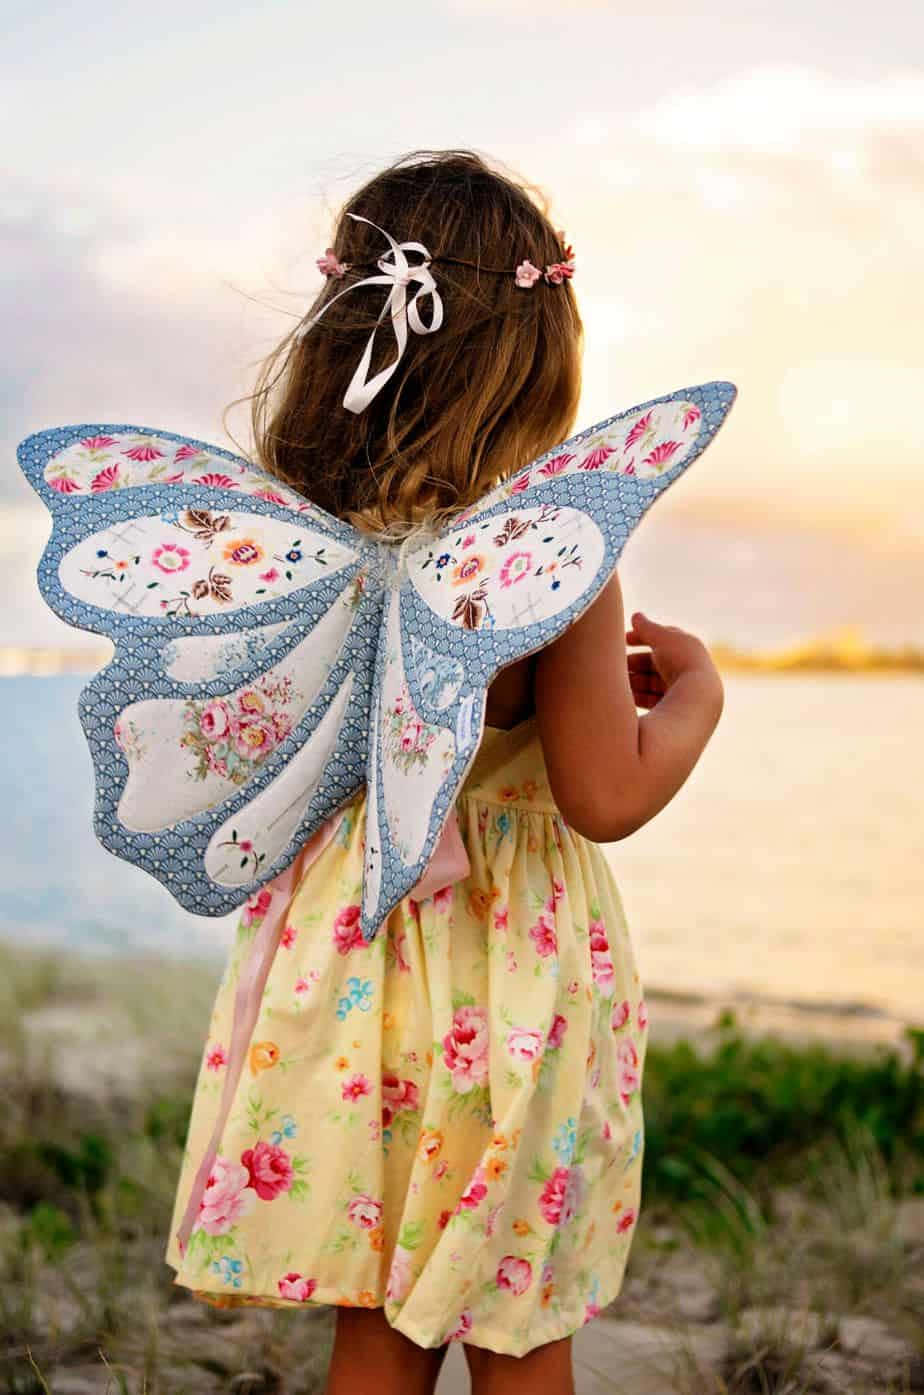 Beautiful Butterfly Wing Dress" Wallpaper